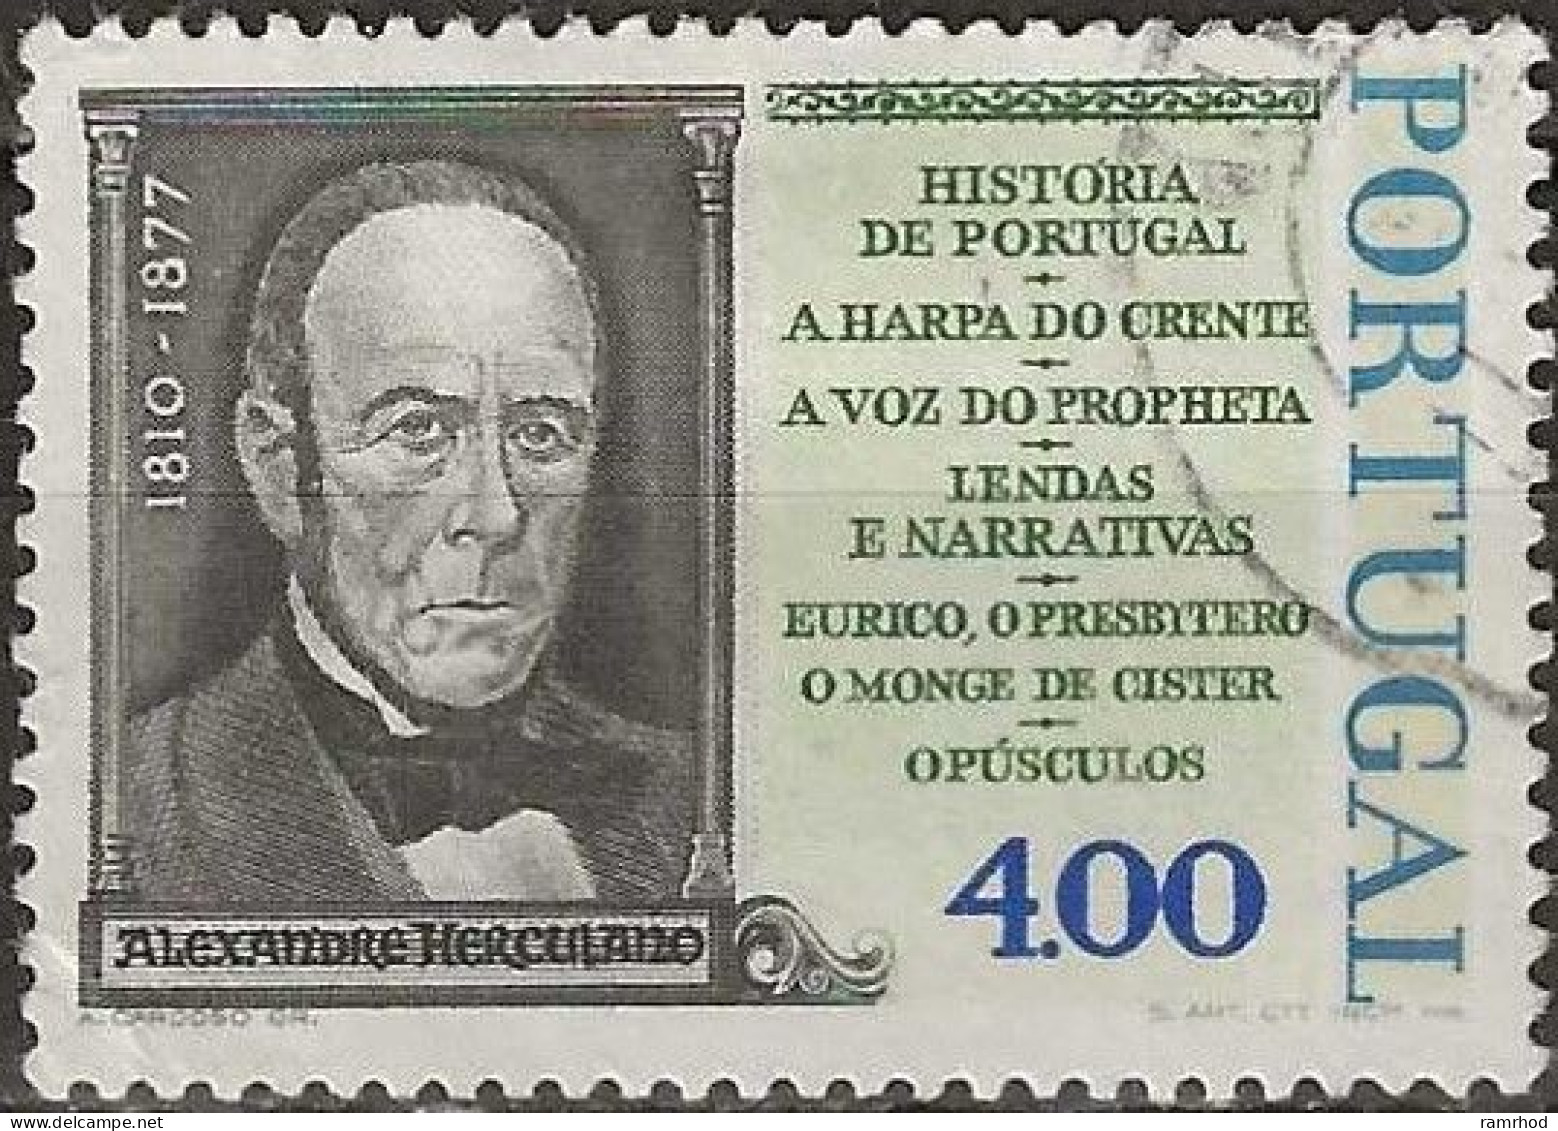 PORTUGAL 1977 Death Centenary Of Alexandre Herculano (writer And Politician) - 4e Alexandre Herculano FU - Usado